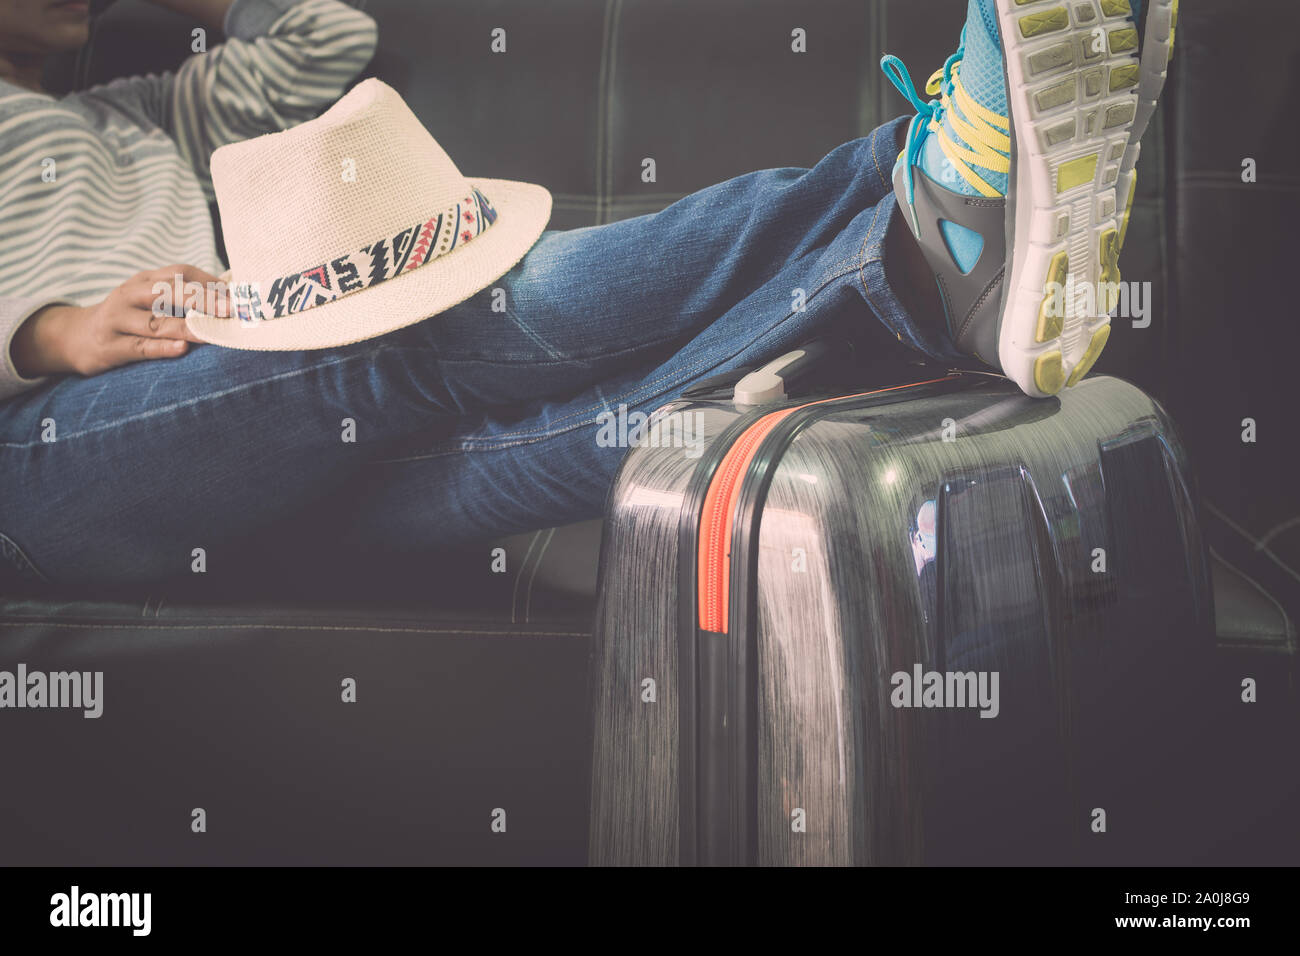 Voyageuses met la sienne sur les jambes de voyage lors de l'attente à l'aéroport. Concept de voyage. Banque D'Images